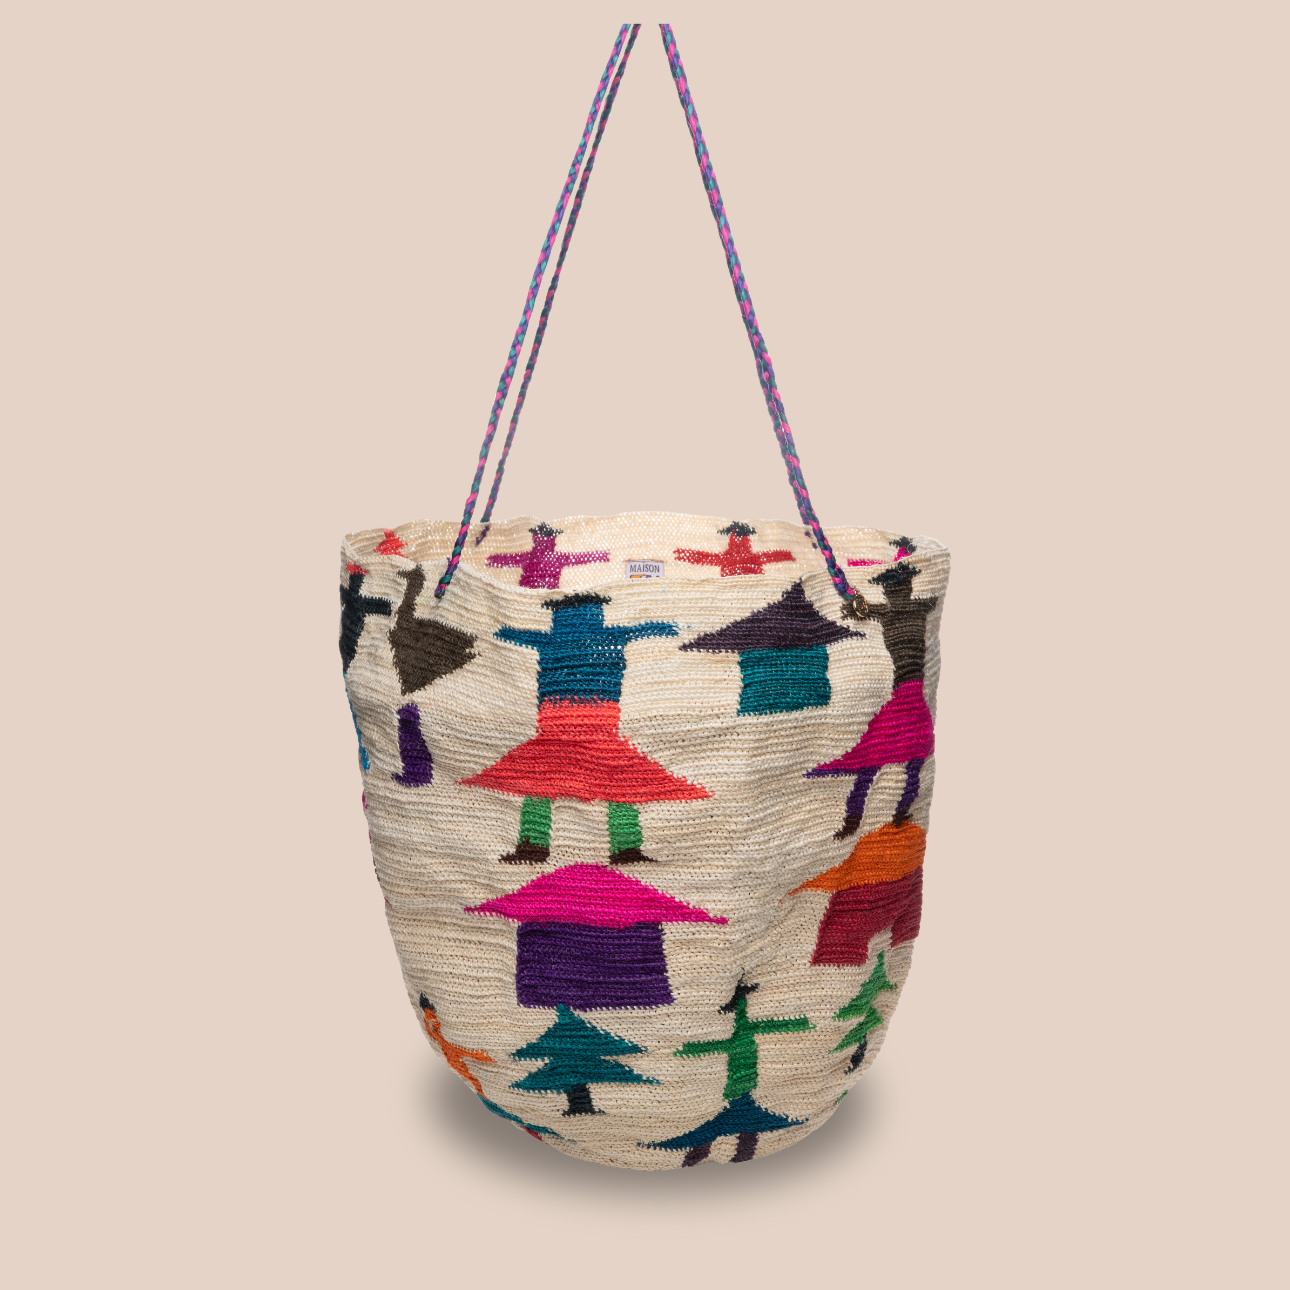 Image d'un sac aux motifs poupées, sac large en fibres de cactus arborant des couleurs vives et audacieuses